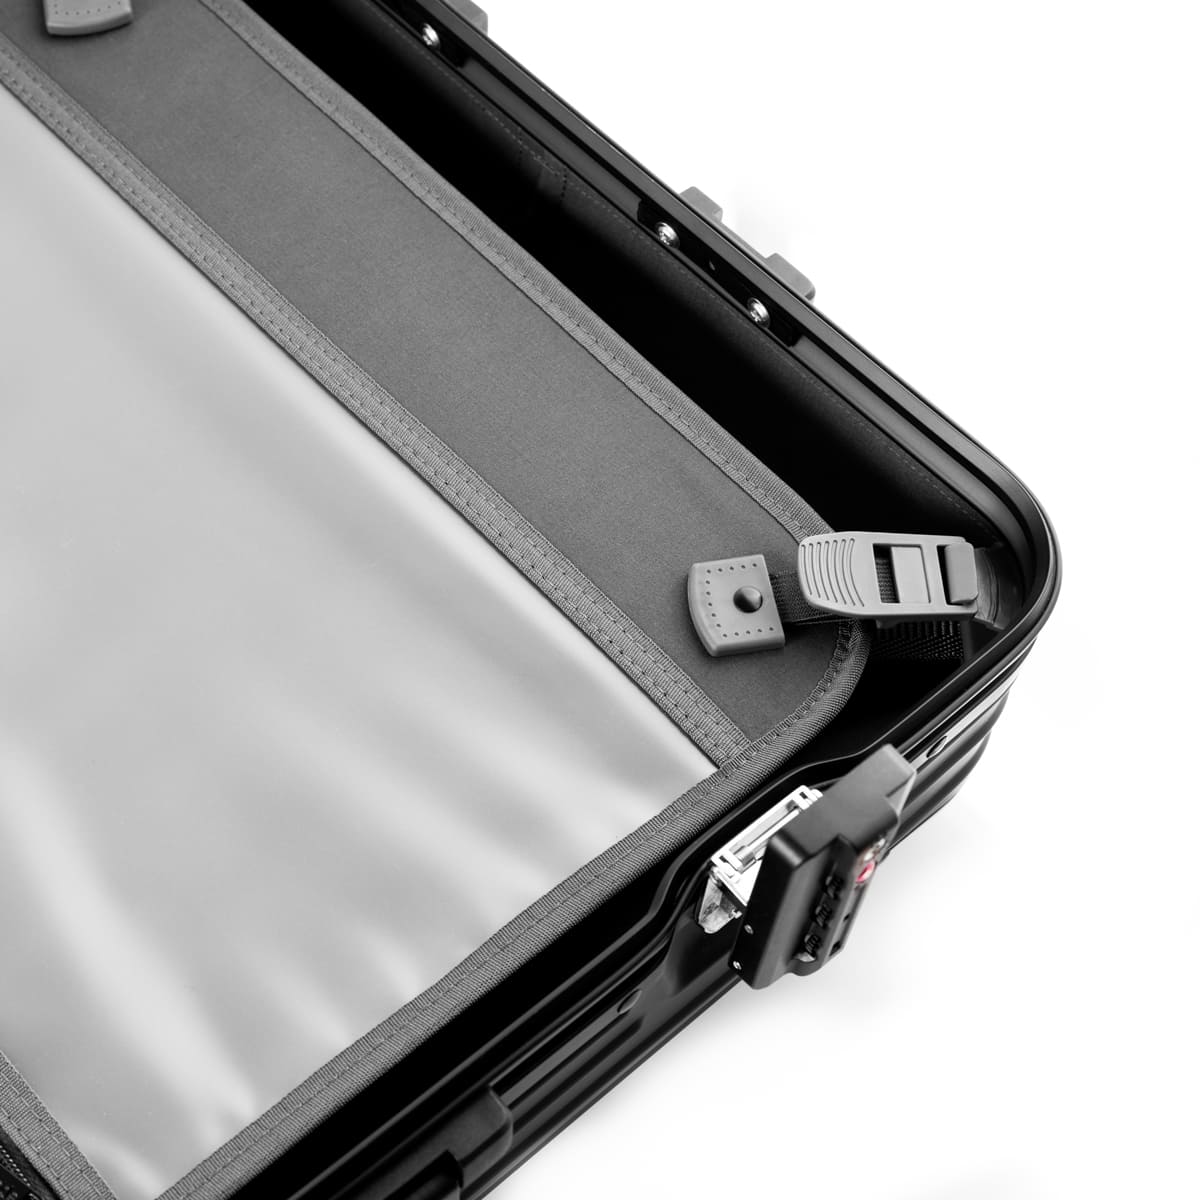 Flightmode Aluminium Suitcase CABIN - Black